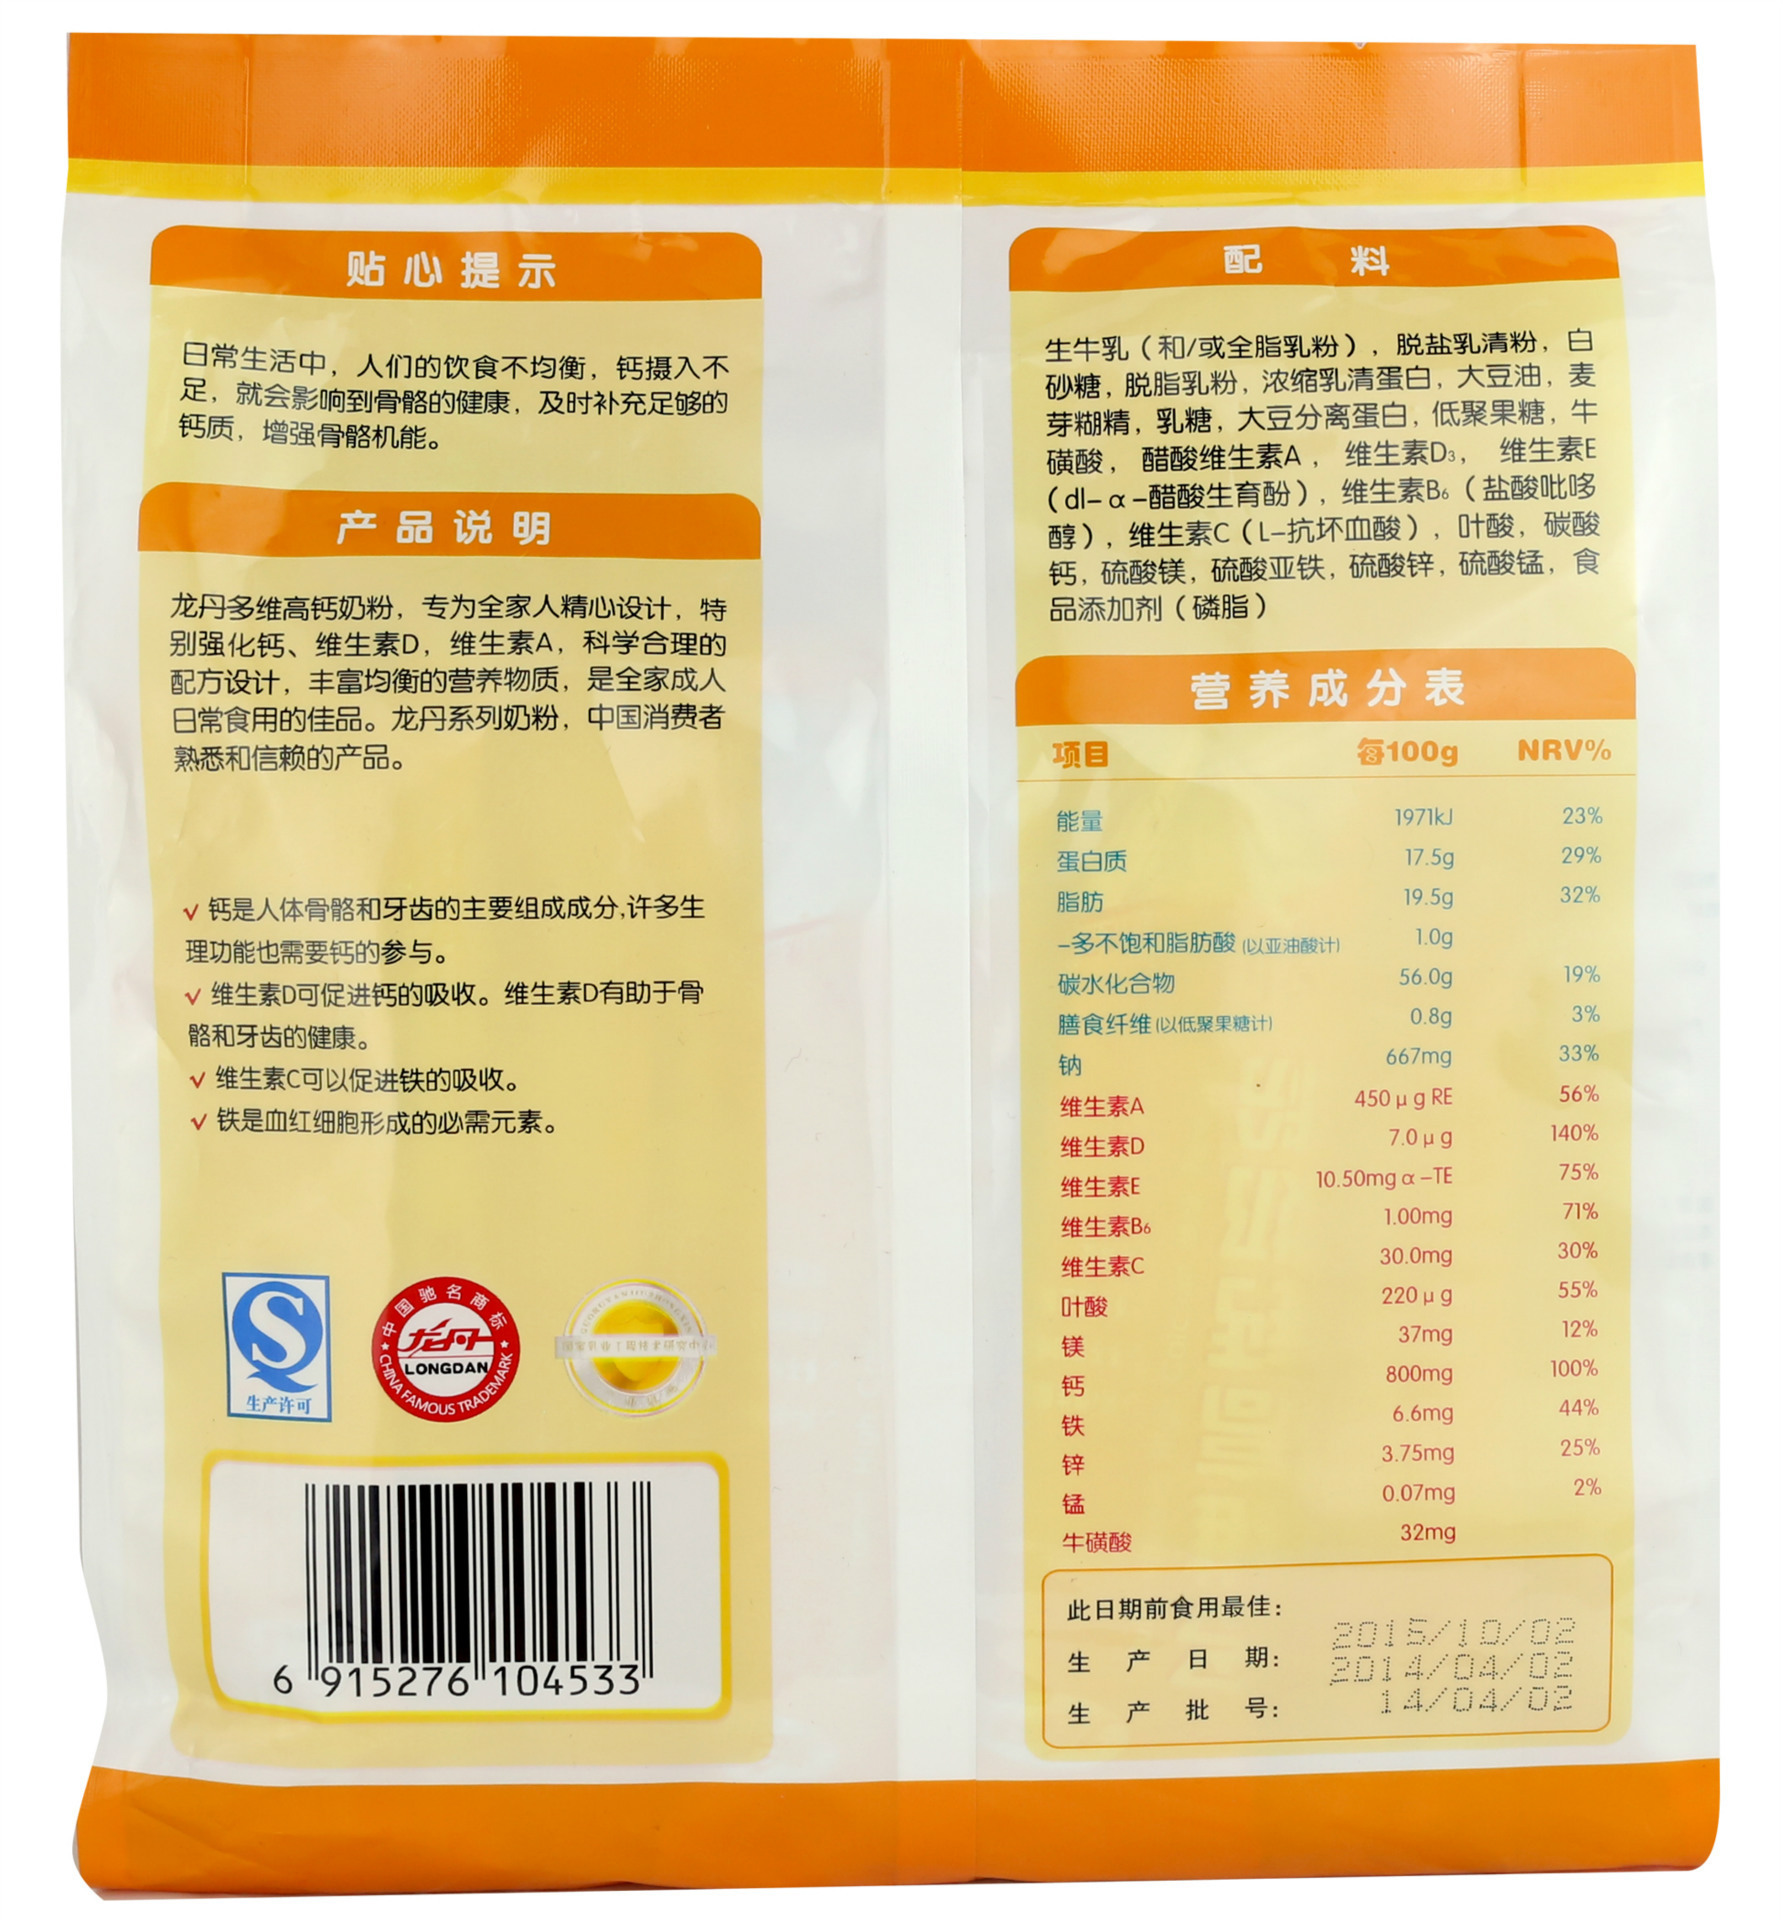 供应龙丹多维高钙奶粉400克 骨骼营养专家袋装奶粉批发 品质保障